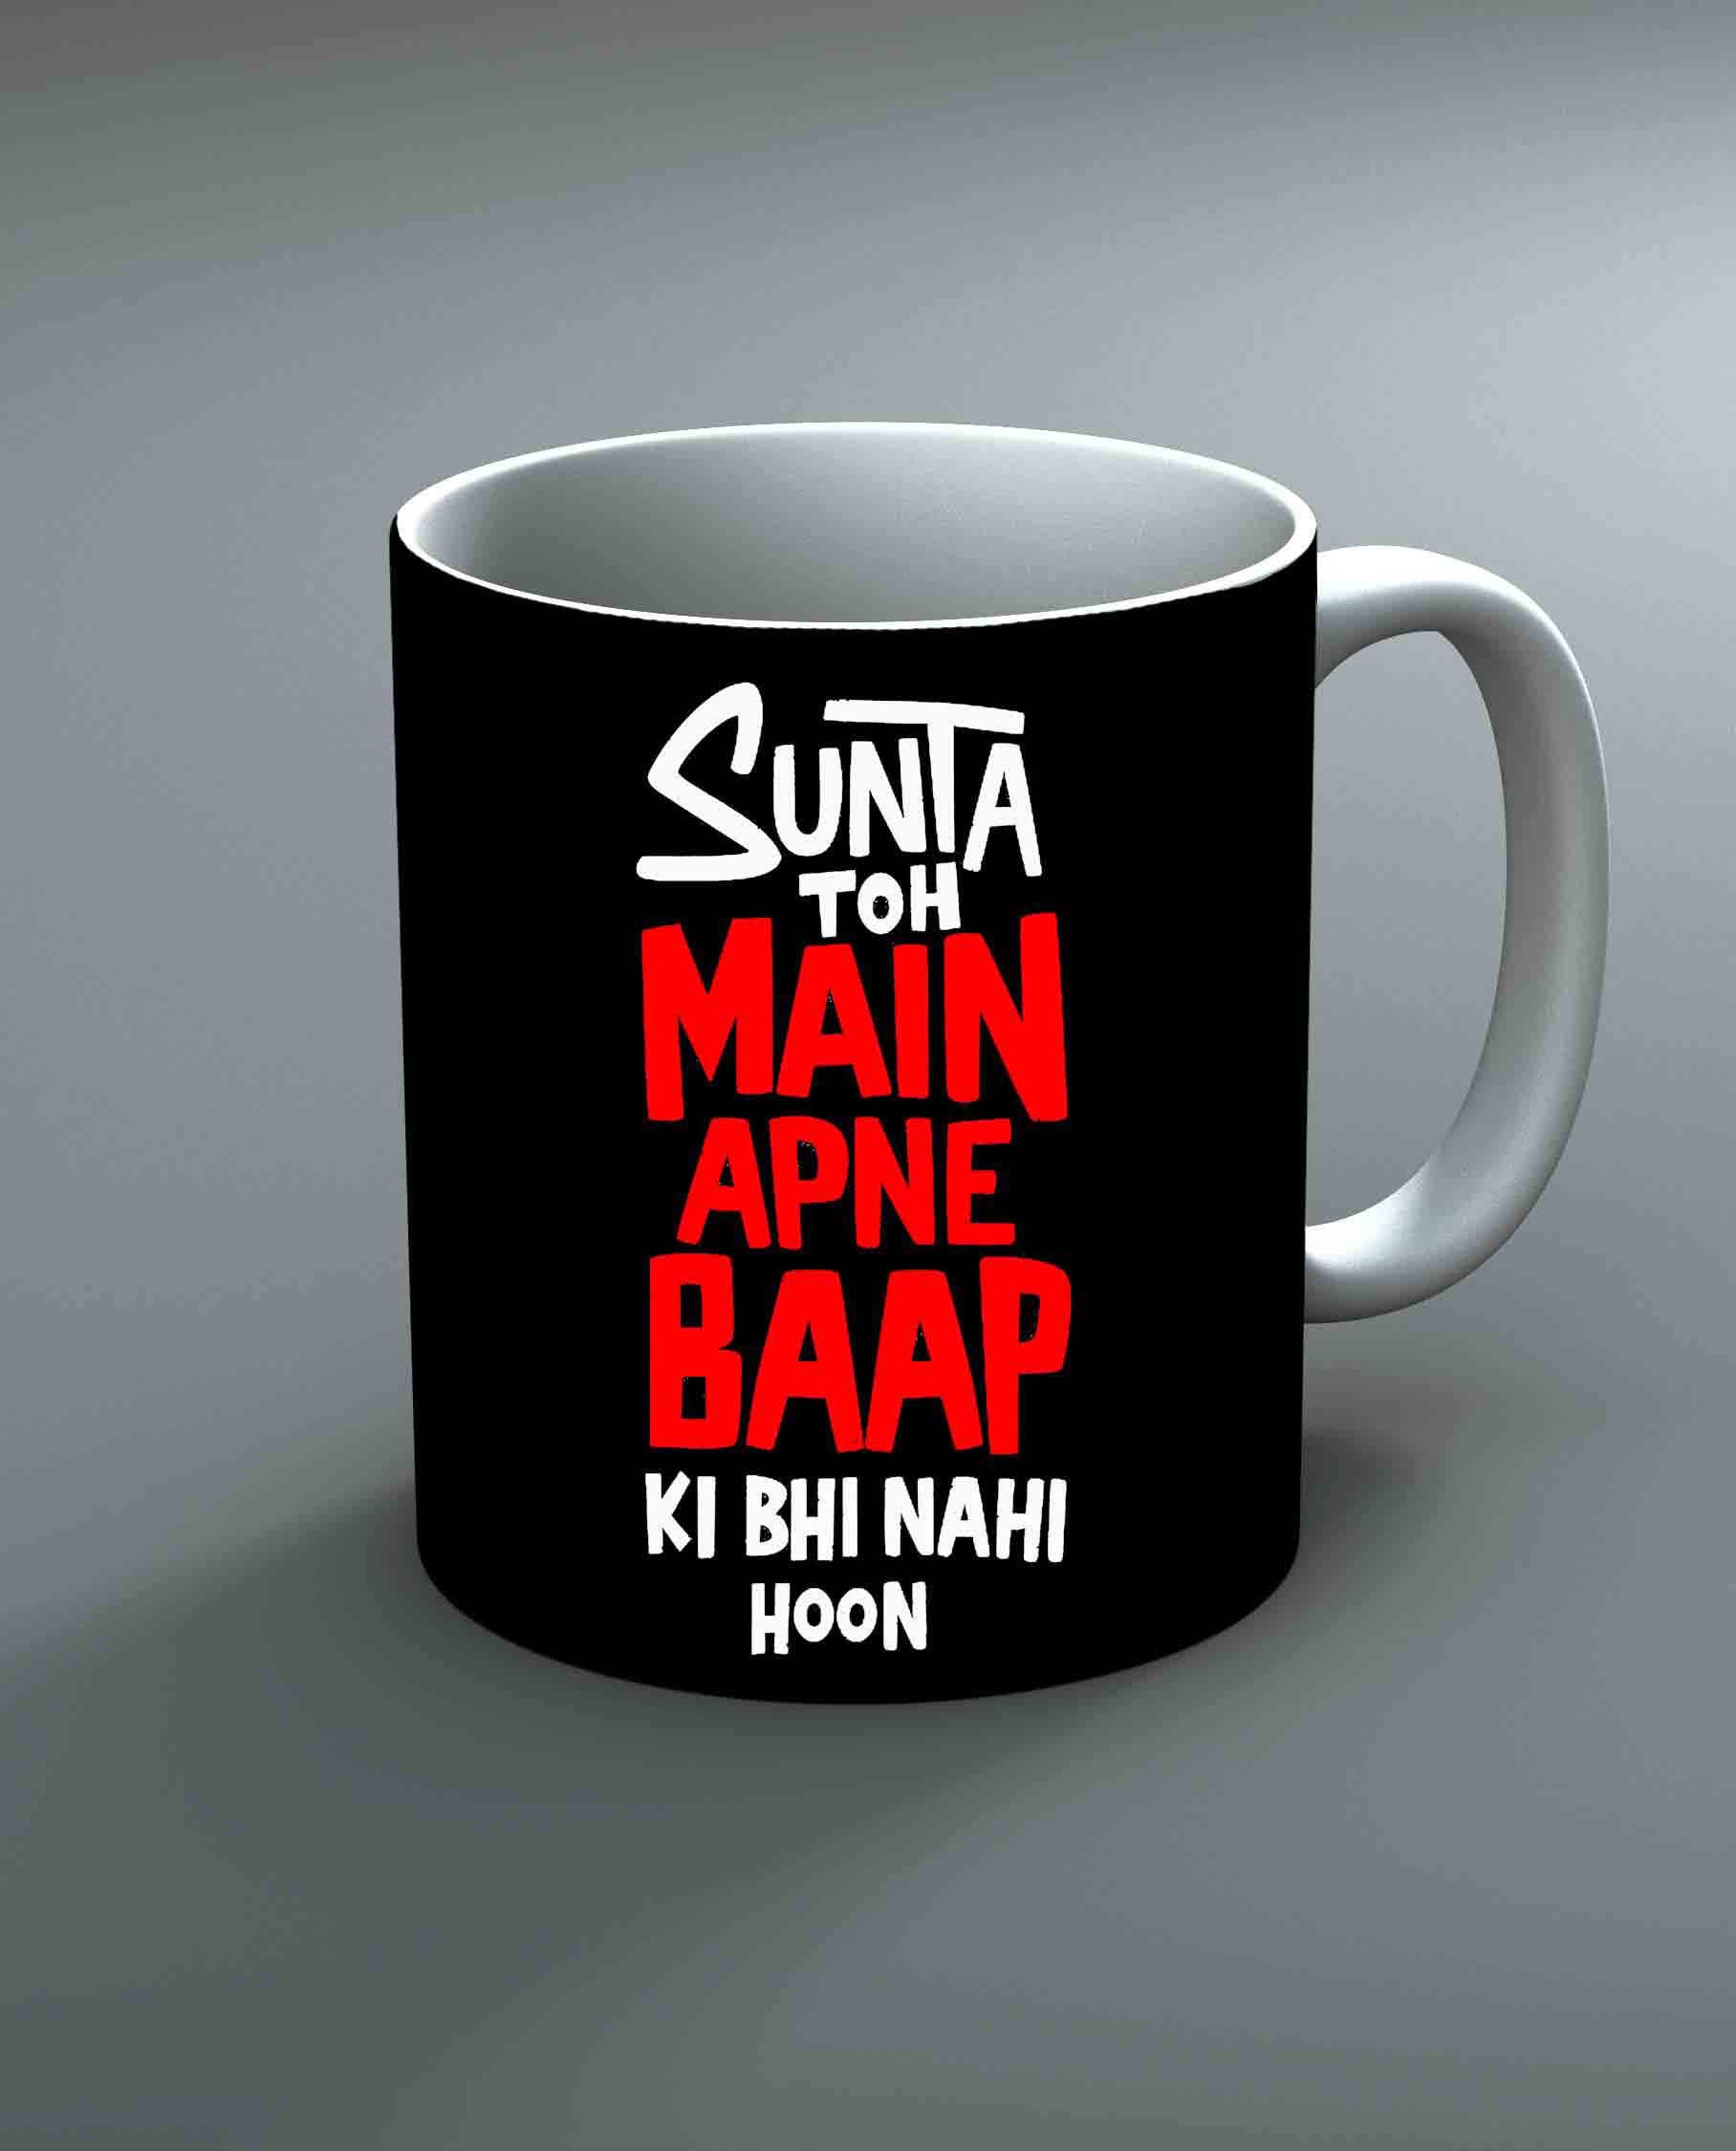 Sunta Toh Main Apne Baap Ki Bhi Nahi Hoon Mug By Roshnai - Pickshop.Pk